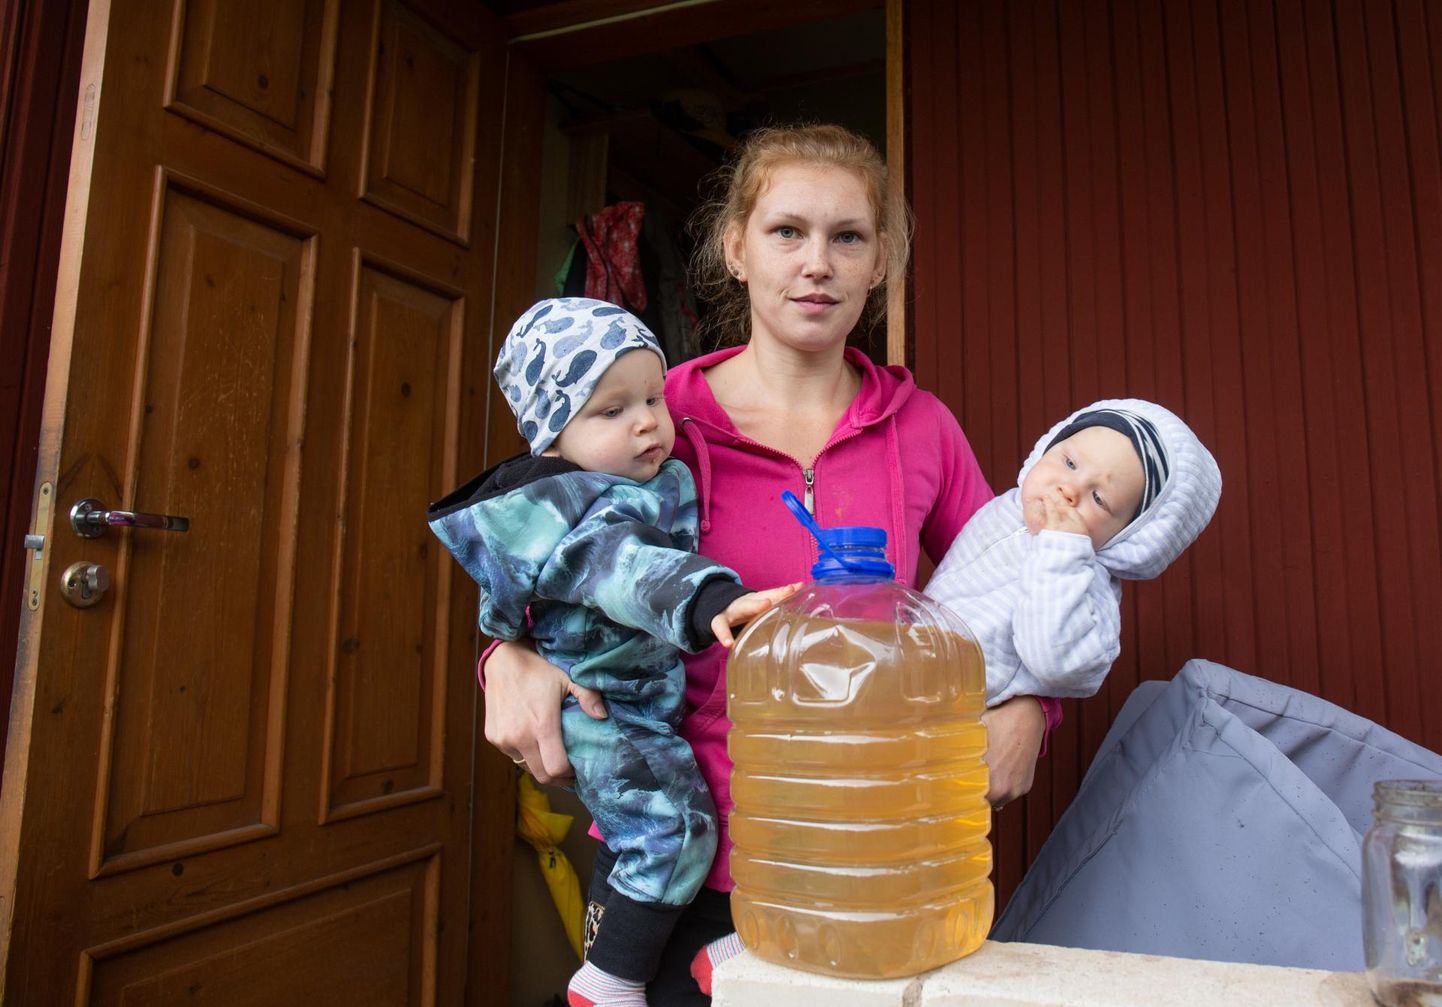 Anna-Liis Feldveberi pere, kus kasvavad kaksikud, vajab hädasti puhast vett nii joomiseks kui pesemiseks, sest läbipaistvas plastnõus on näha, milline vesi voolab nende köögikraanist.